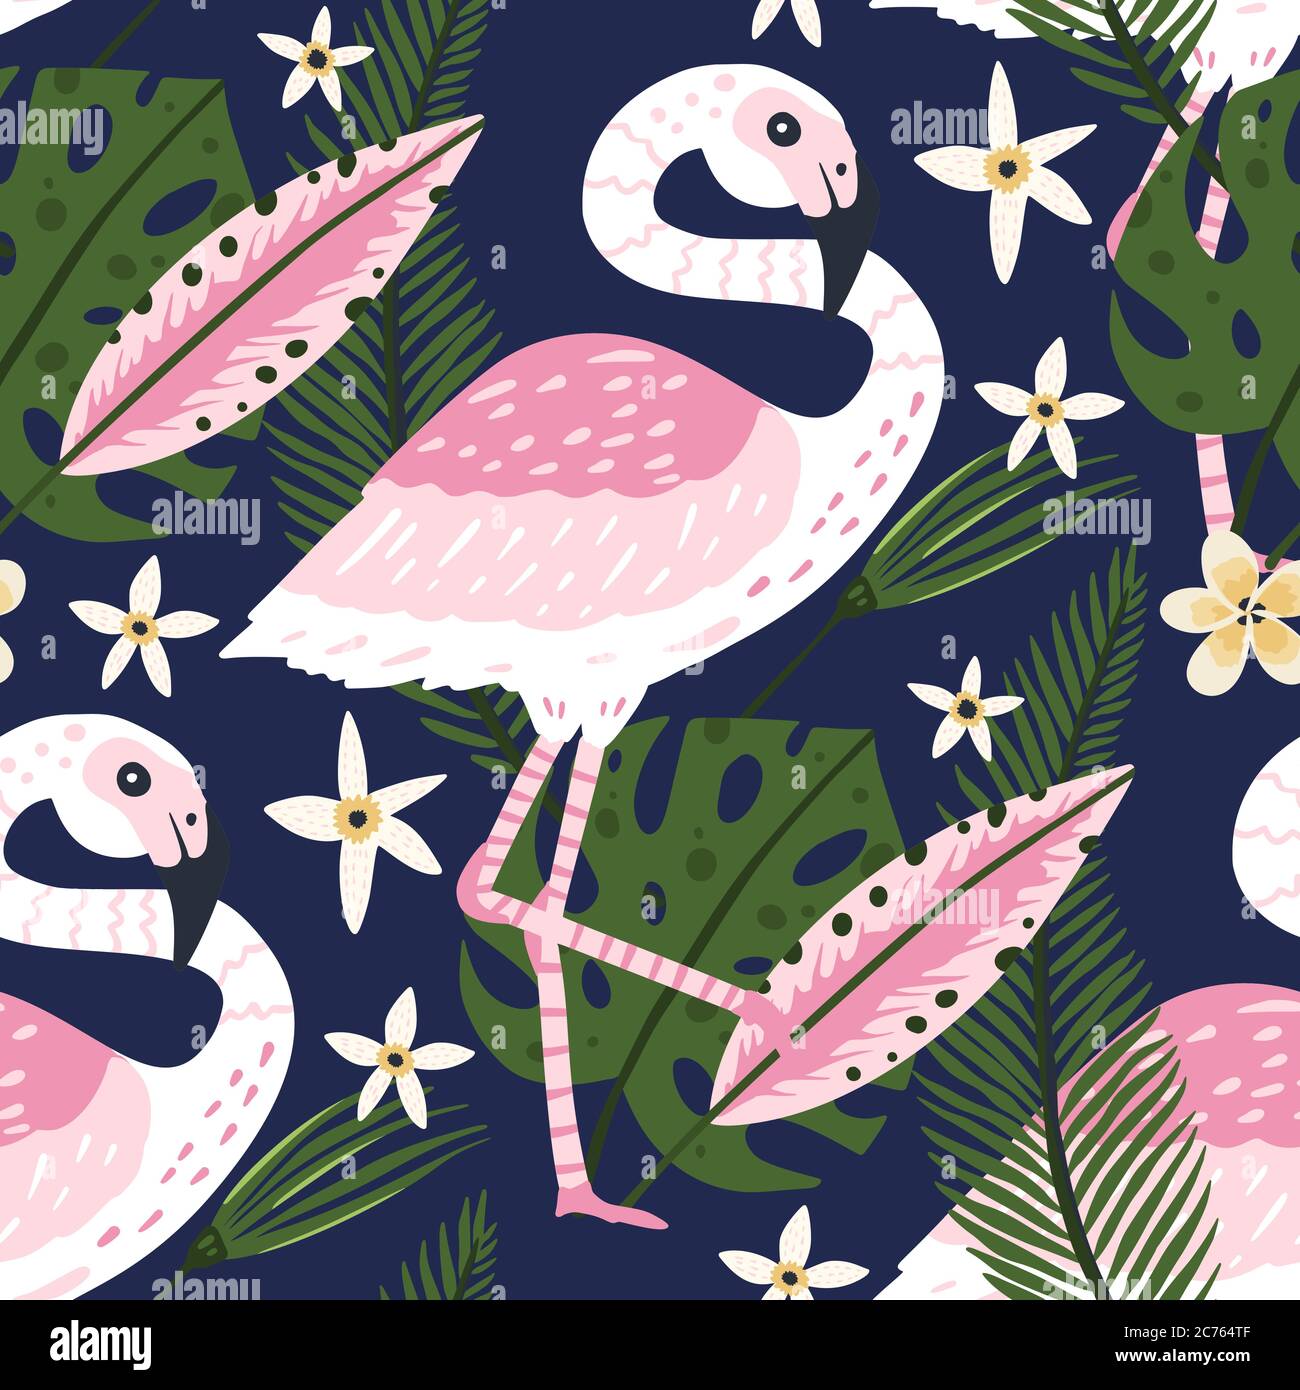 Tropisch weiß Flamingo Vogel nahtlose Sommer Muster. Exotische reich verzierte Vektor-Tapete mit rosa wilden Tieren und Dschungel floralen Illustrationen auf einem rosa Hintergrund. Stock Vektor